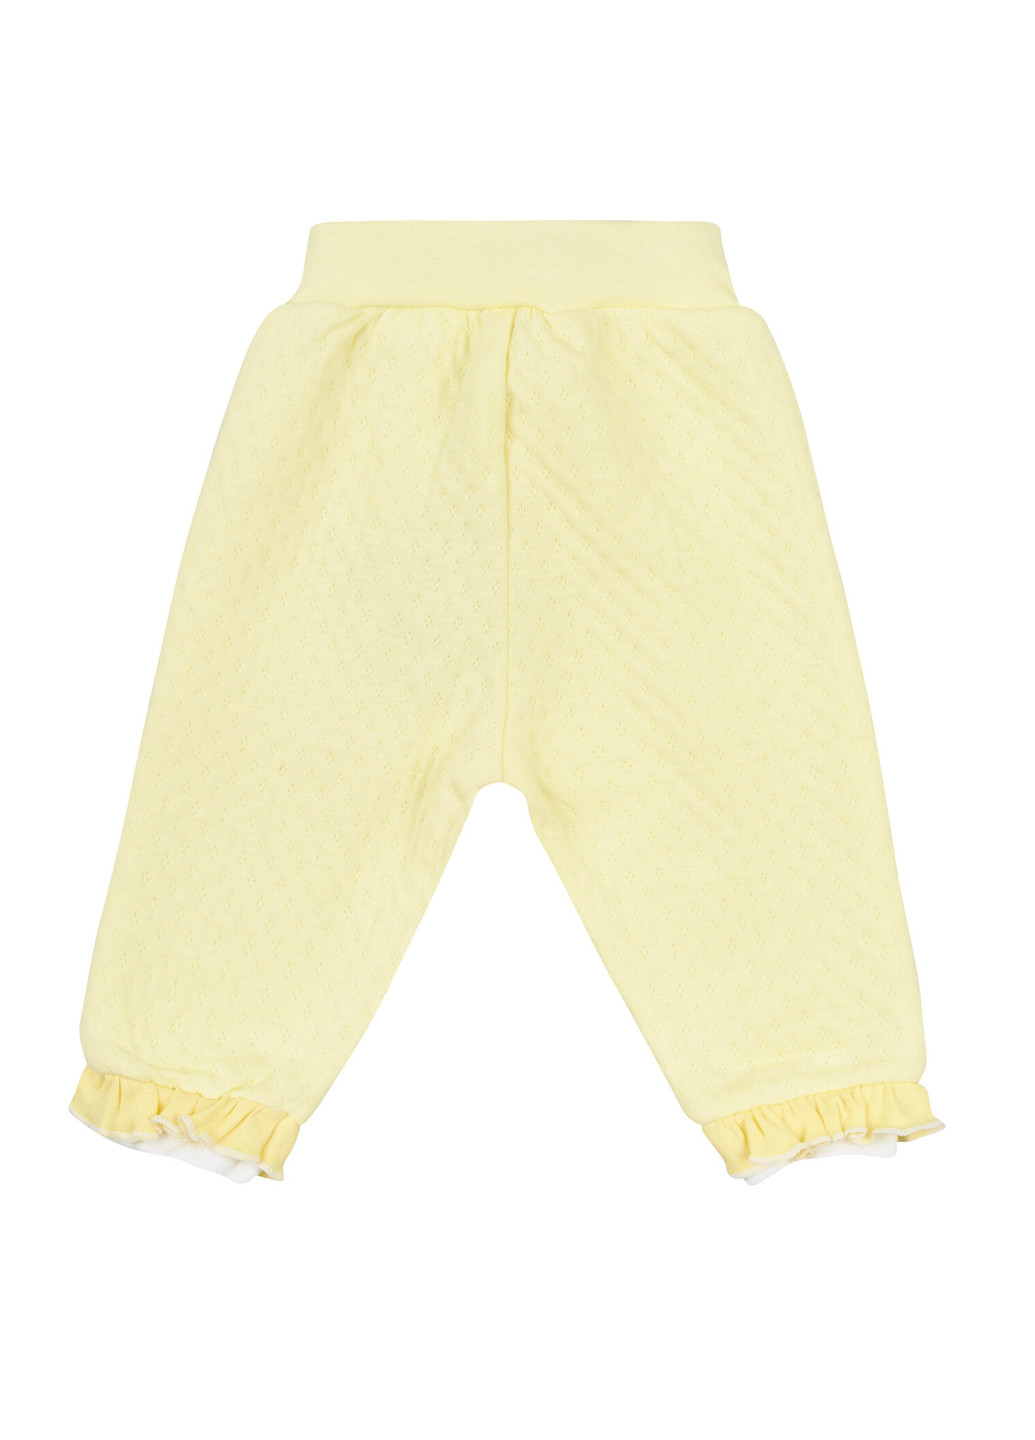 Желтые домашние демисезонные брюки Ляля